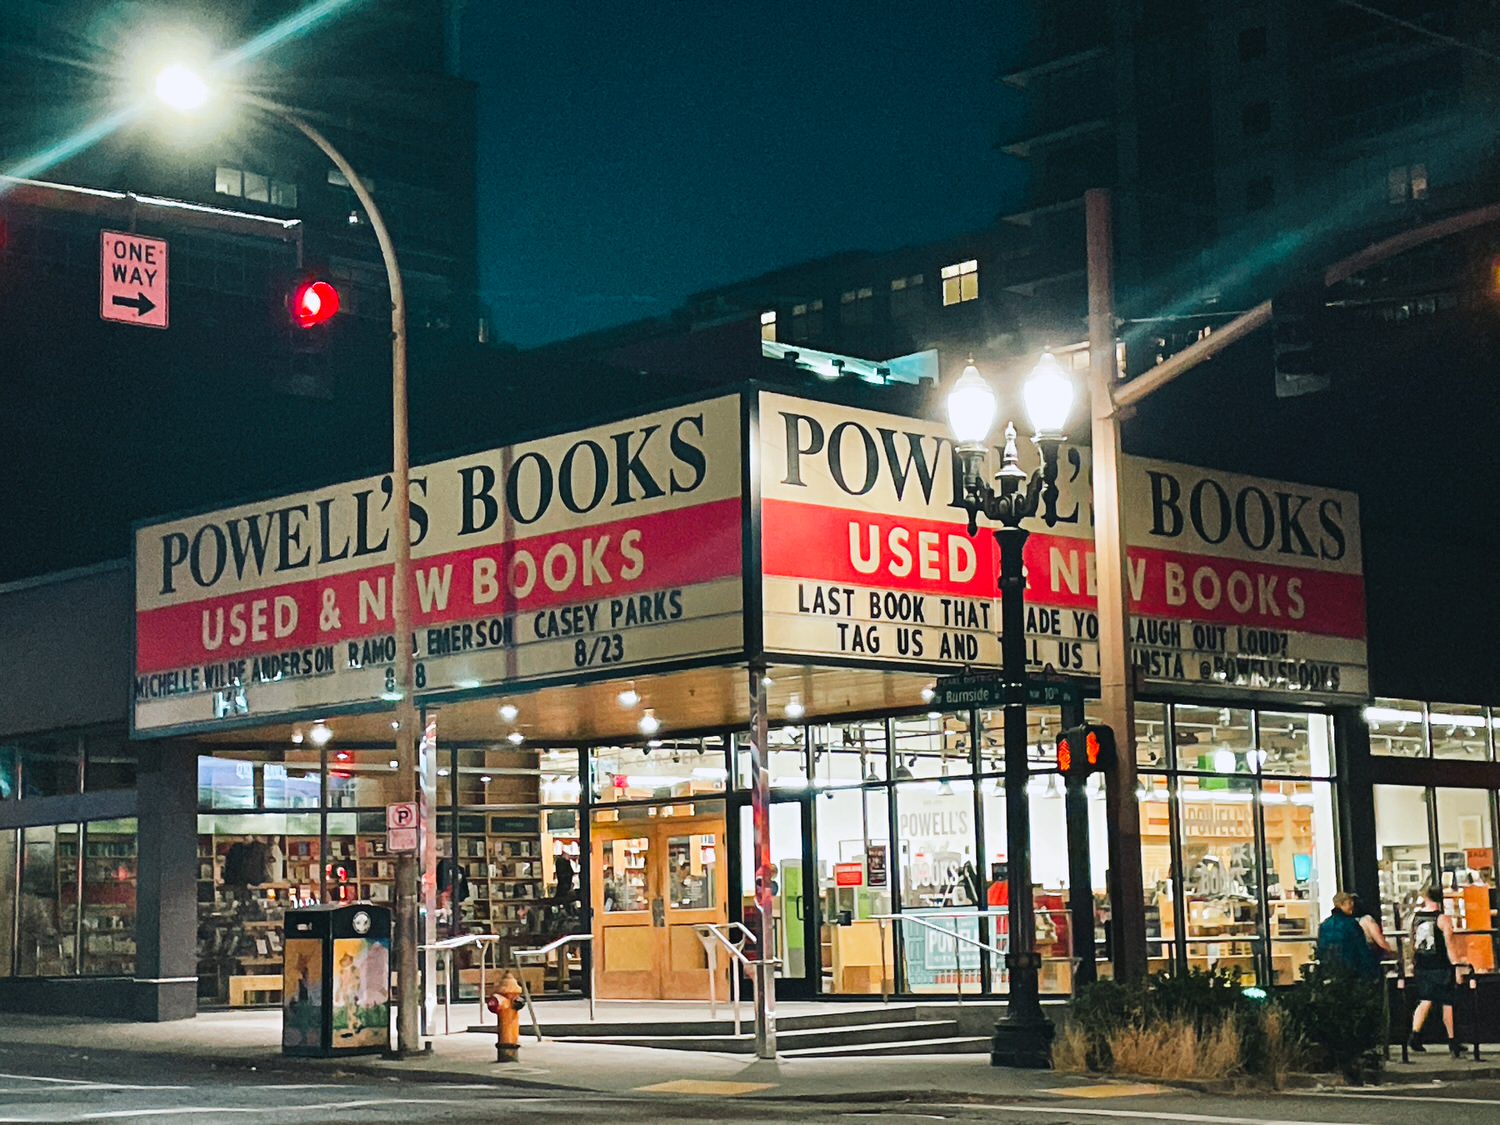 2023波特蘭 Portland
全球最大獨立書店 Powell’s Books 